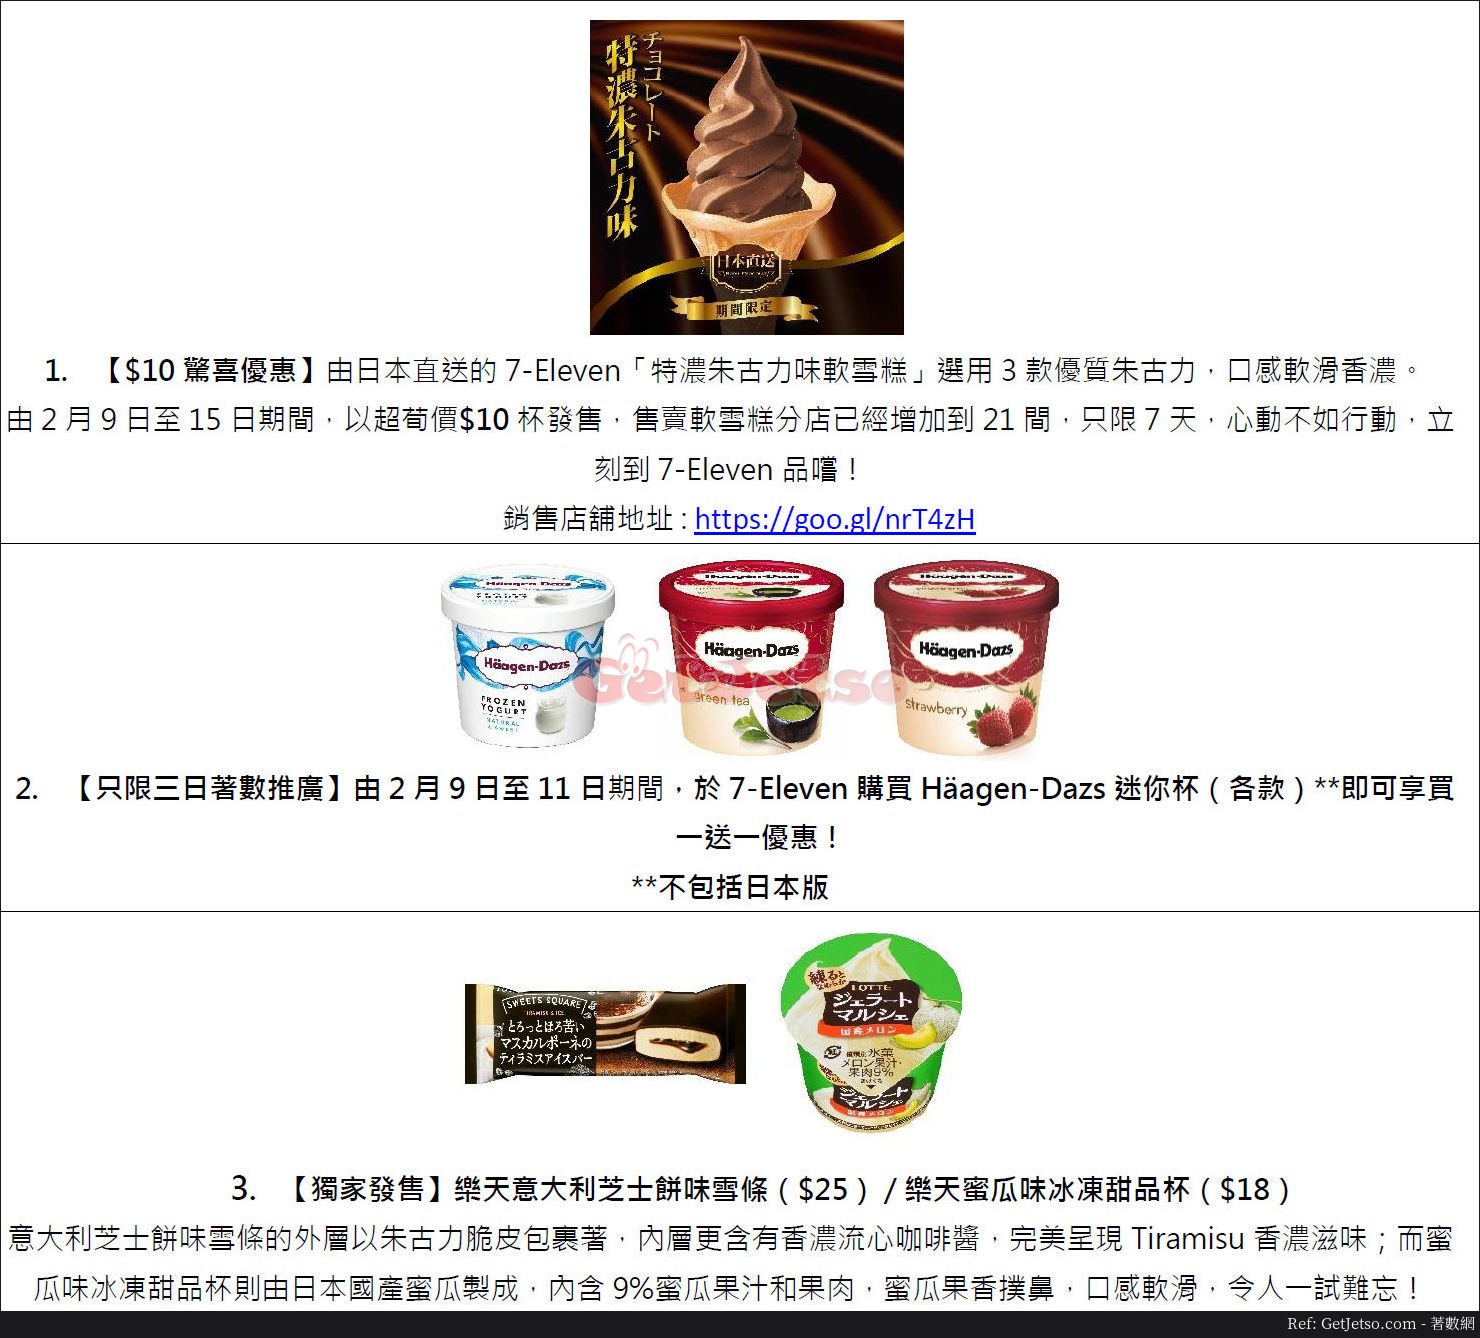  軟雪糕、Häagen-Dazs 迷你杯買1送1優惠@7-Eleven(至18年2月15日)圖片1